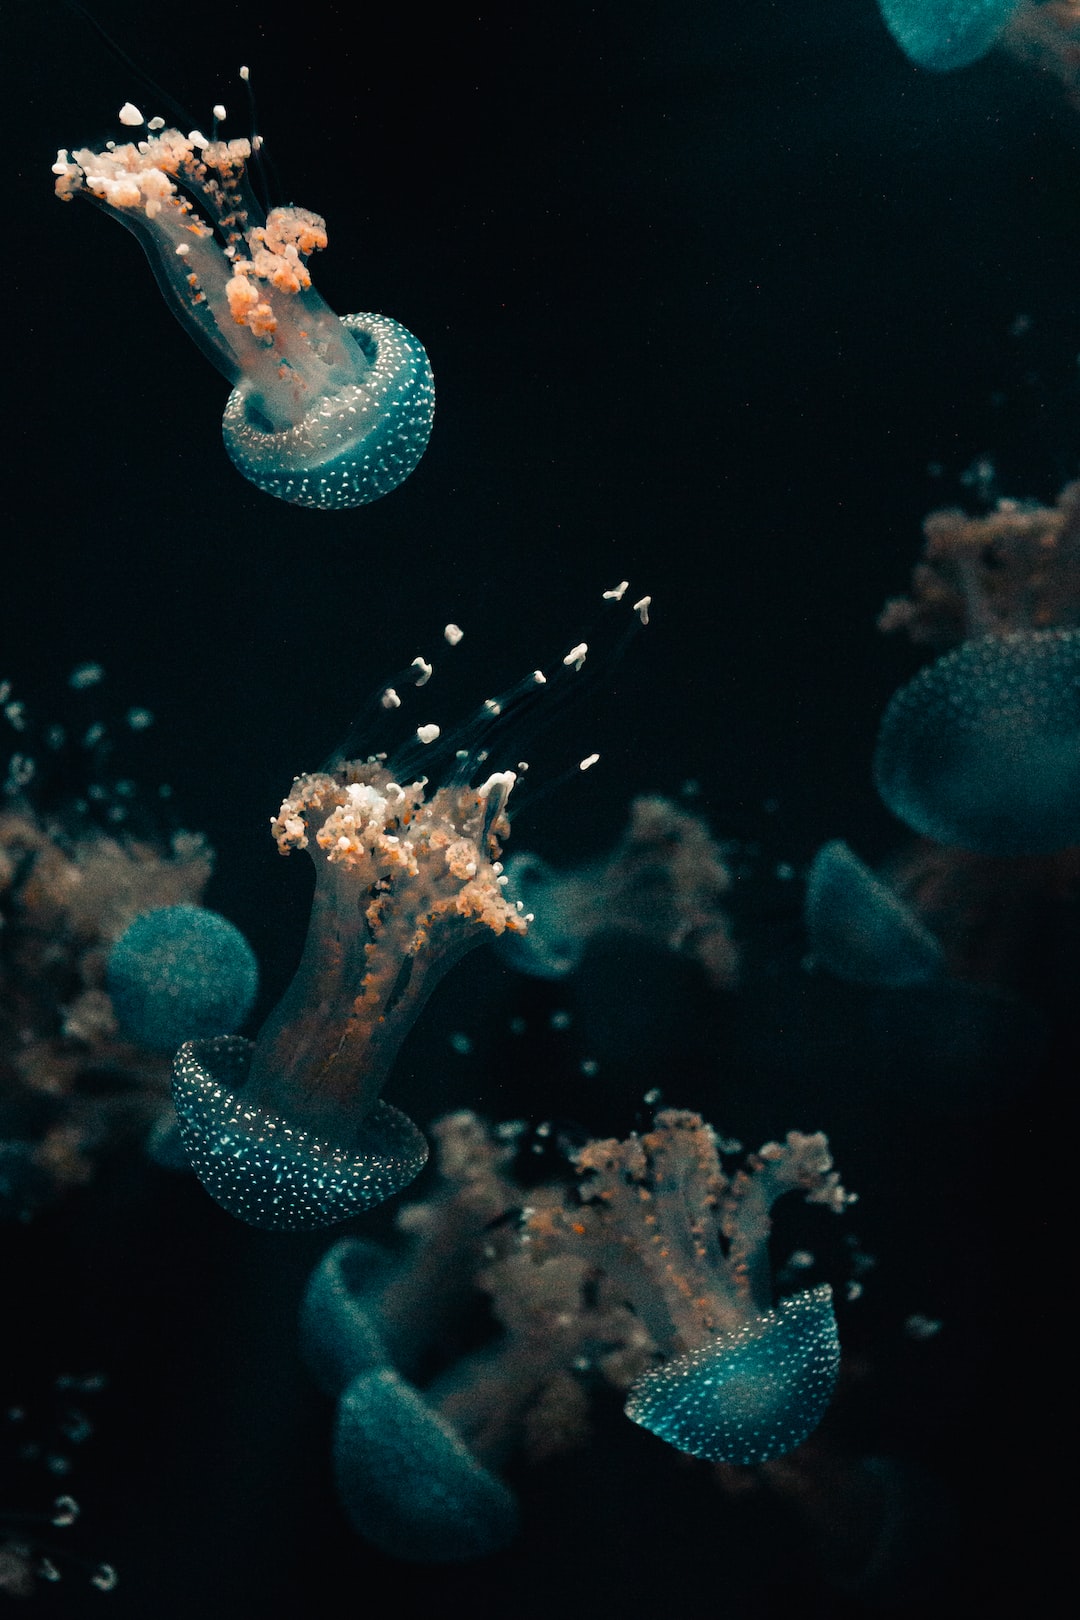 24 wichtige Fragen zu Wo Befindet Sich Das Größte Aquarium?